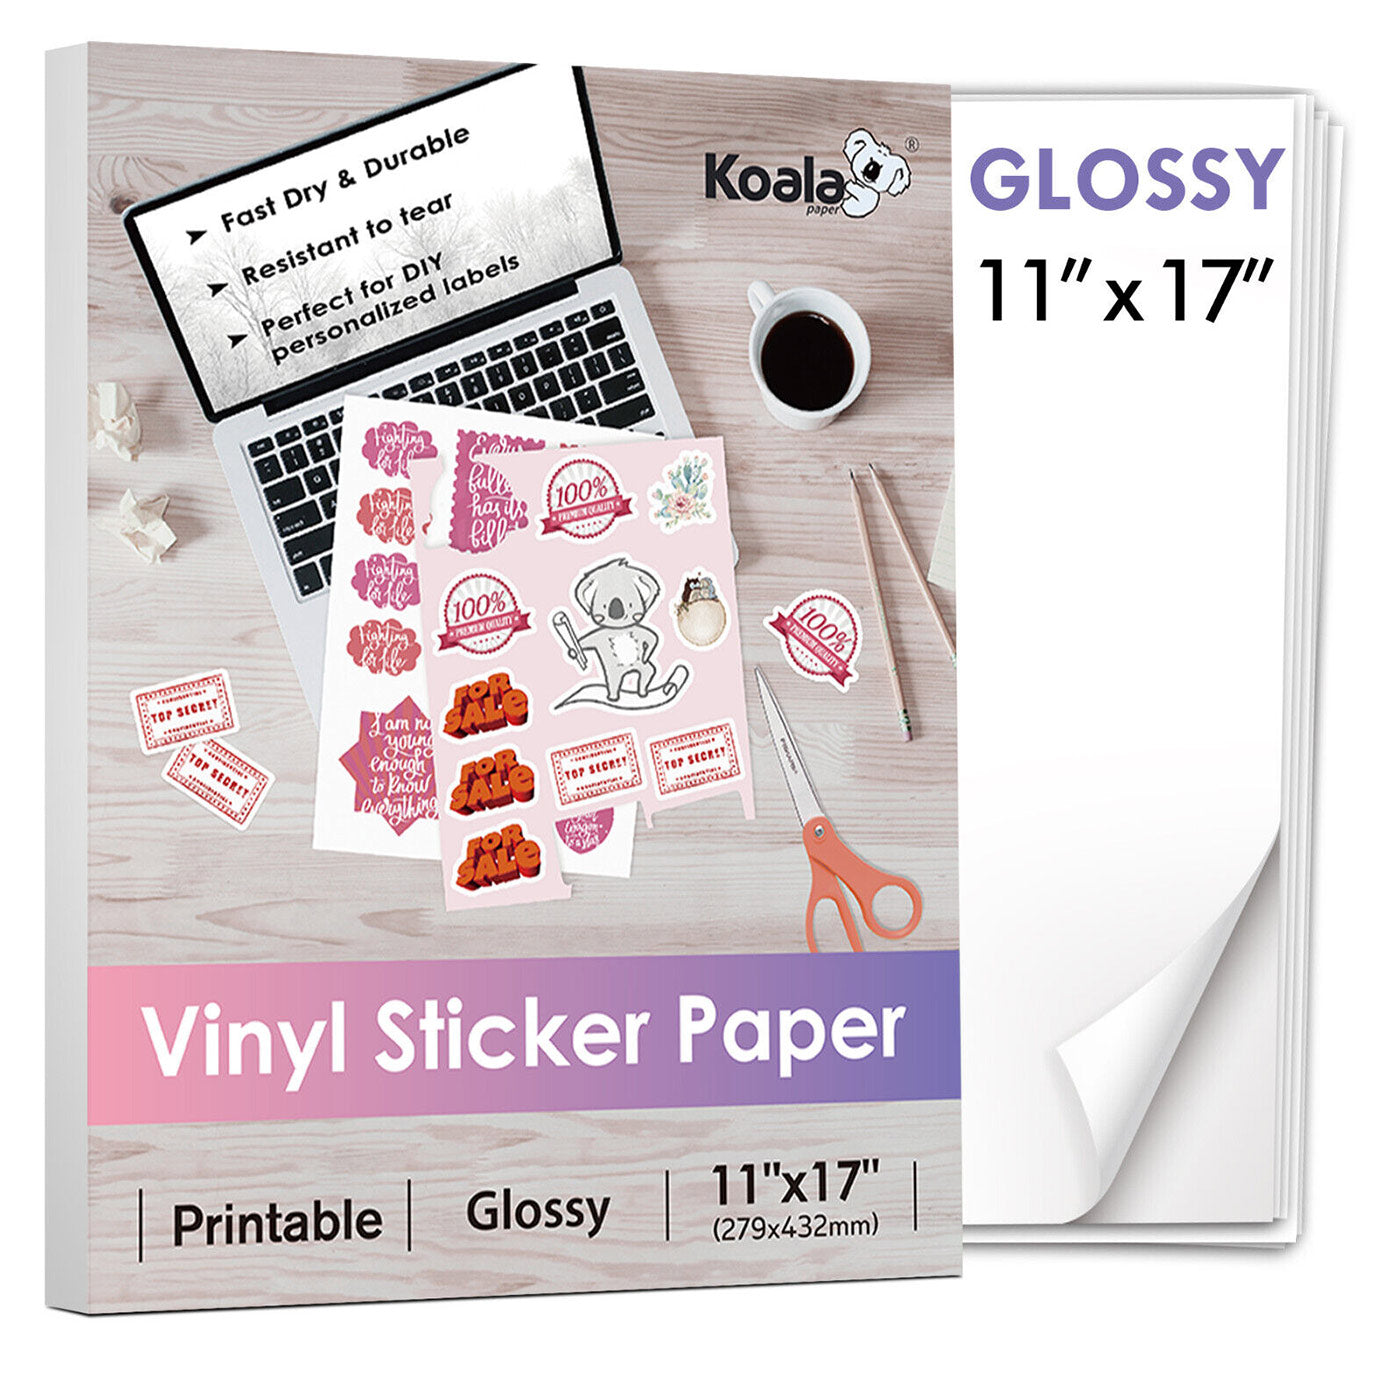  Glossy Sticker Paper for Inkjet Printer - Sticker